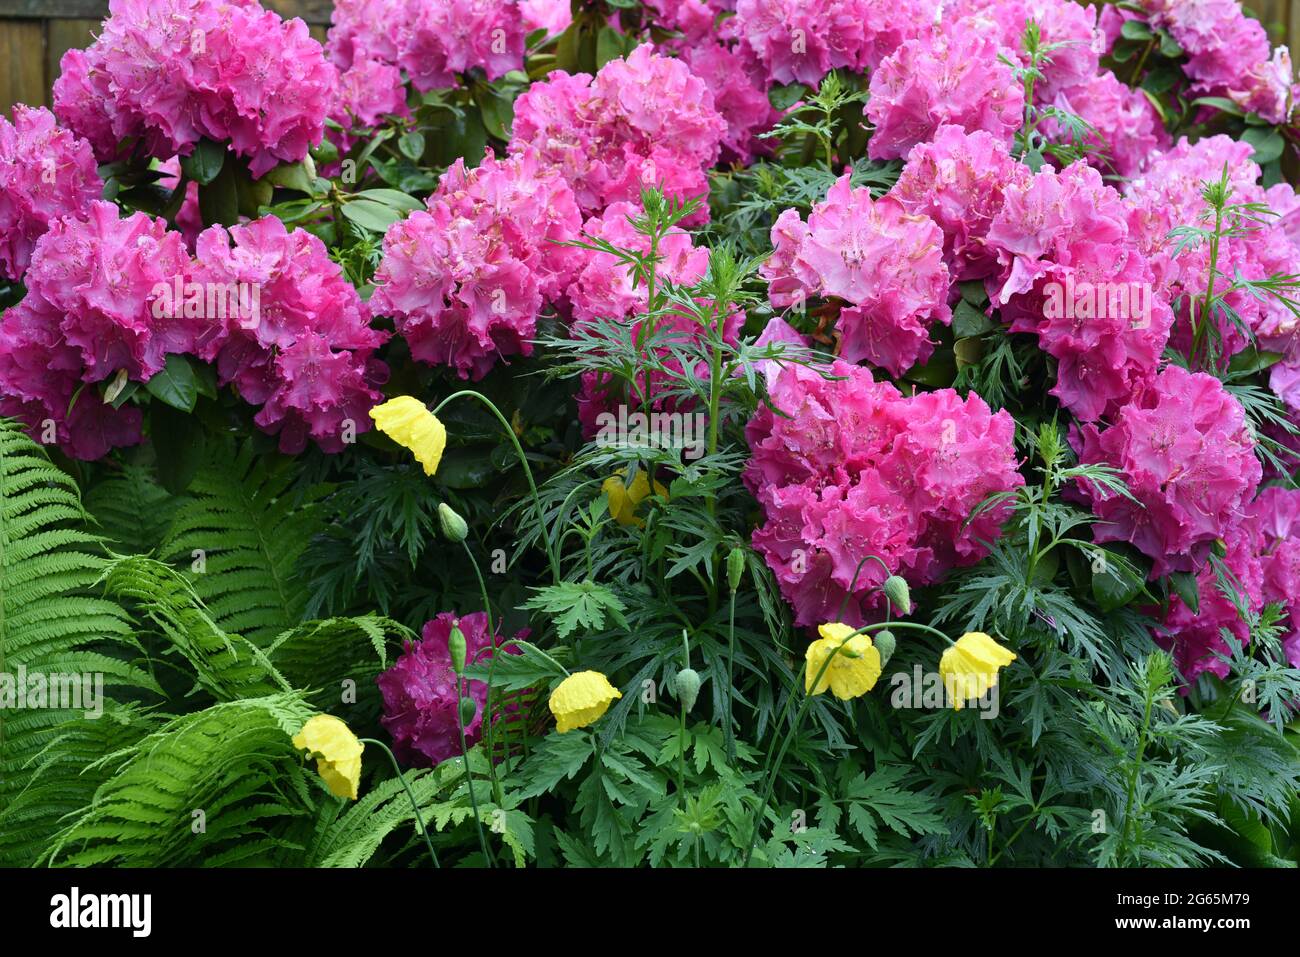 Rhododendron Germania, ist ein immerguenes Zwergehoelz, das im Fruehjahr wunderschoene Blueten hervorbringt. Rhododendron Germania is an evergreen dwa Stock Photo